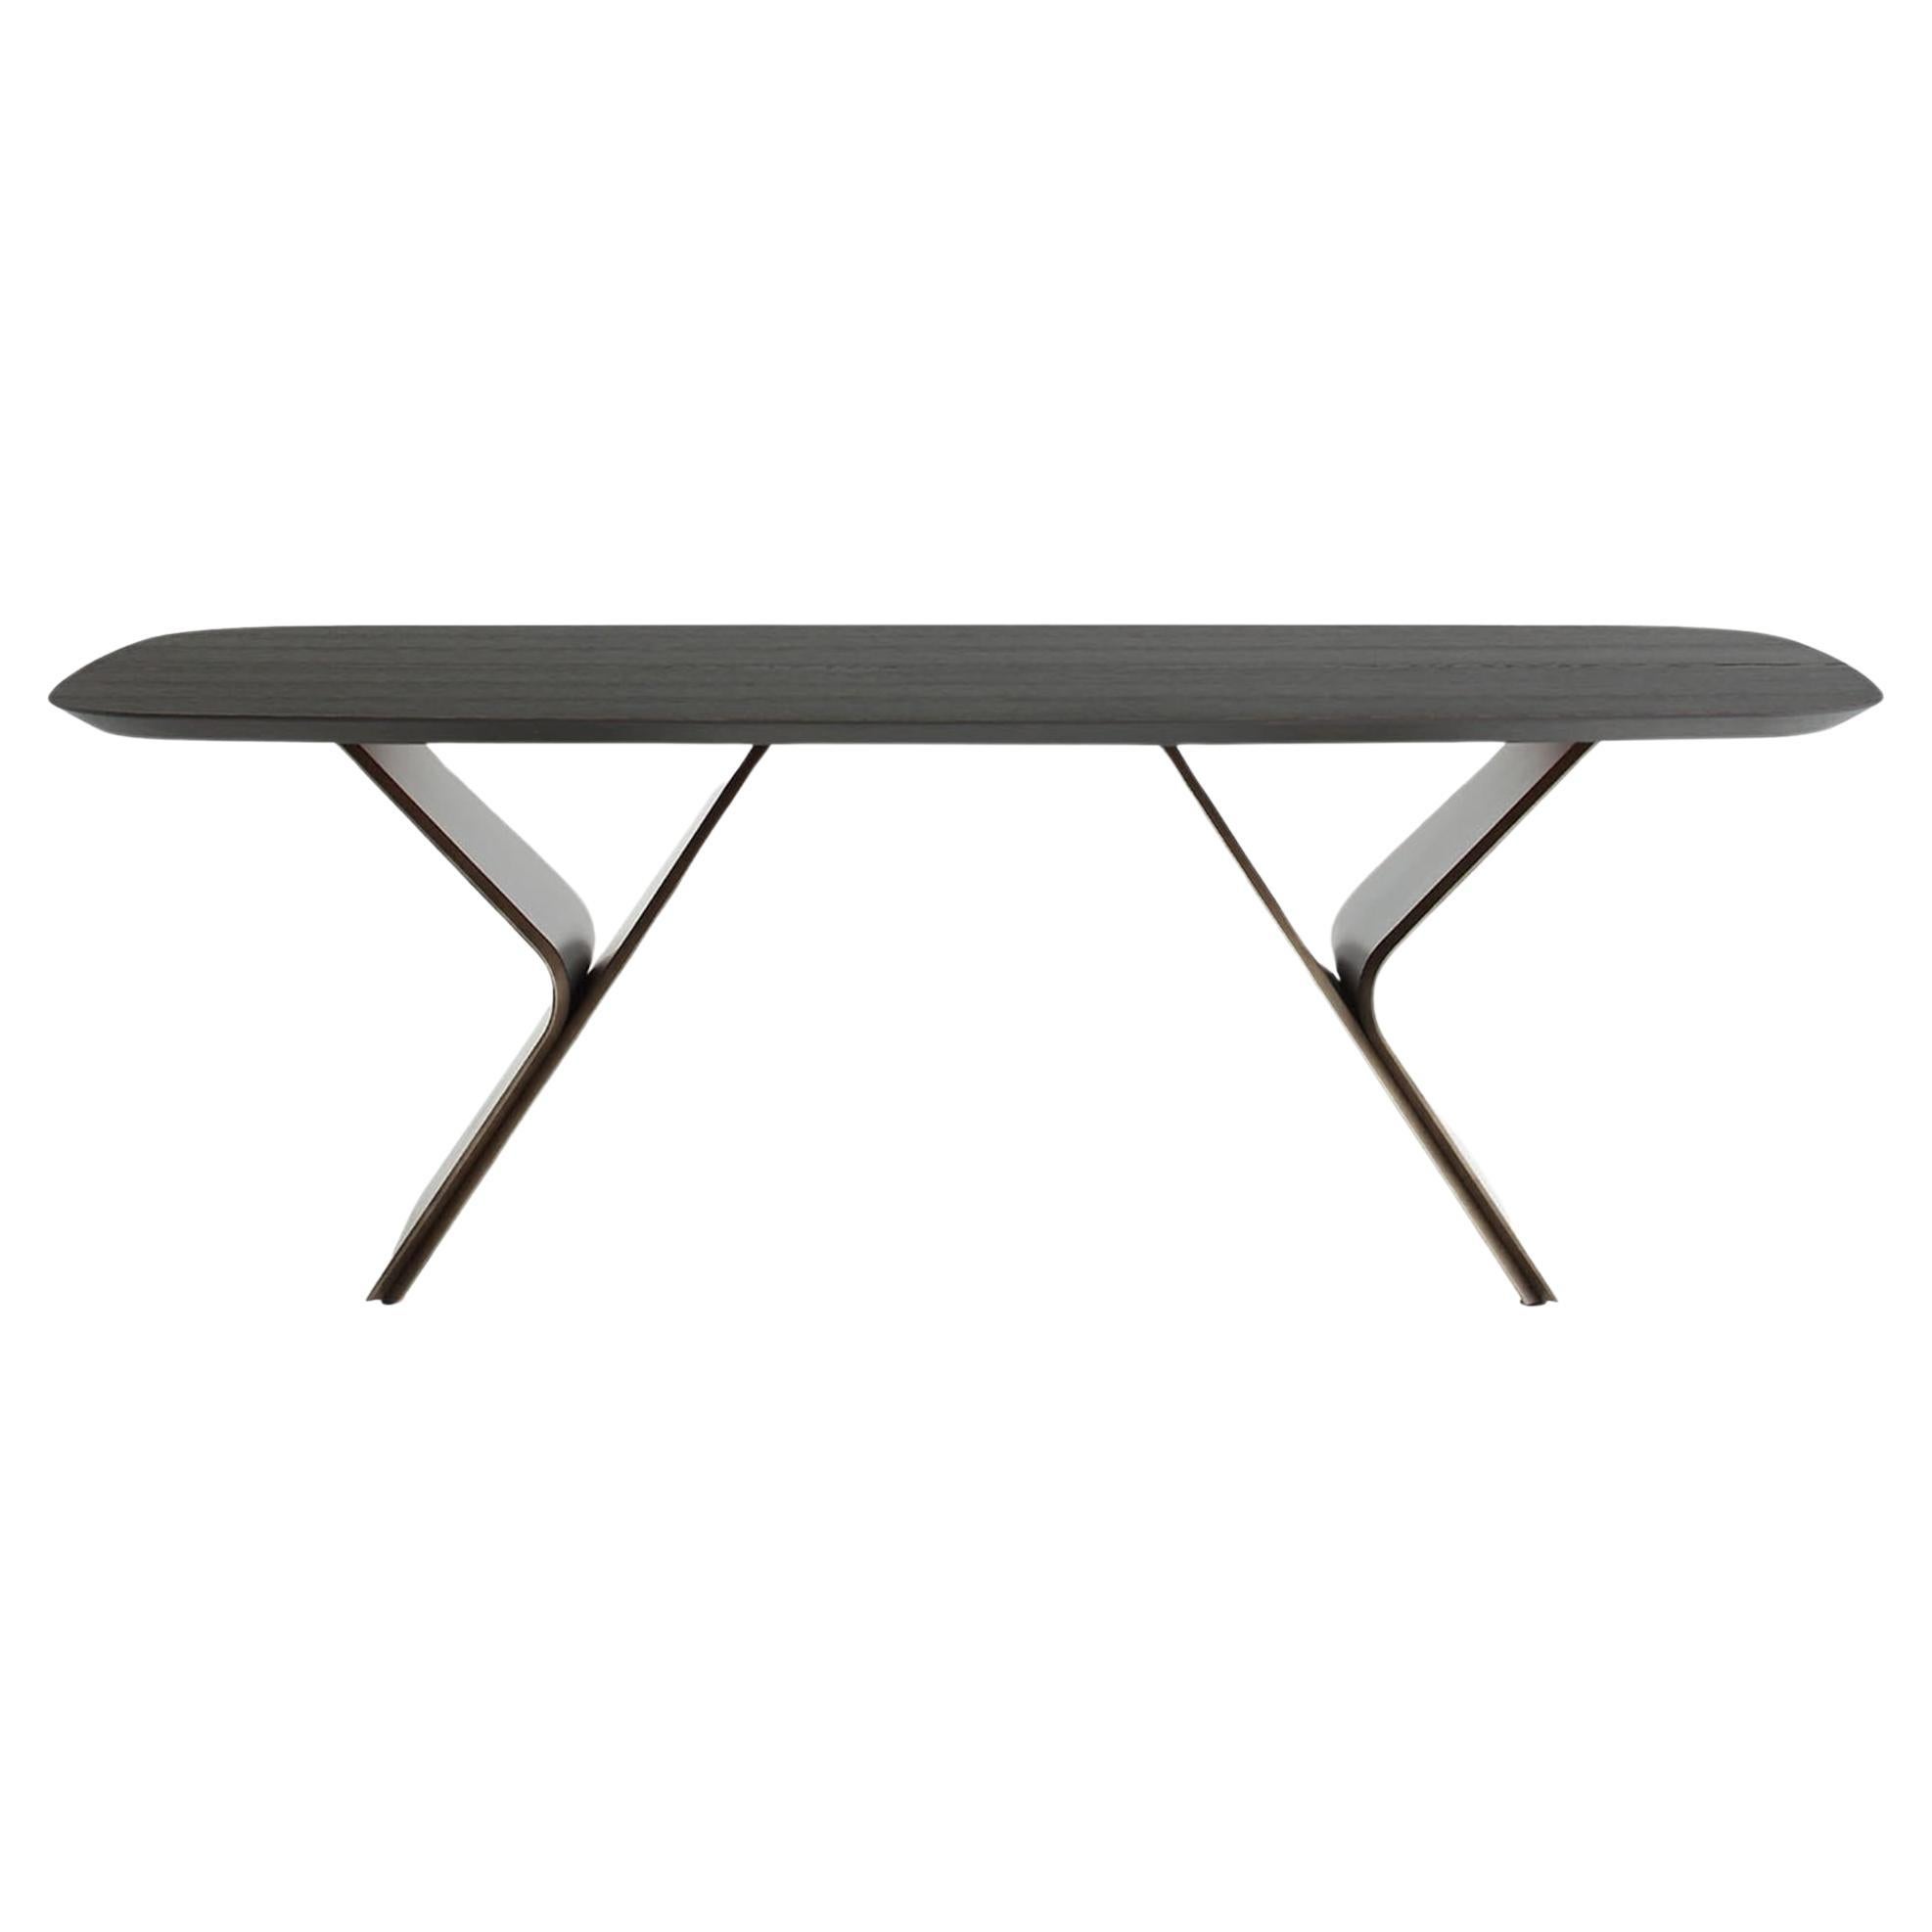 Metaverso Laguna Durmast-Veneered Table For Sale